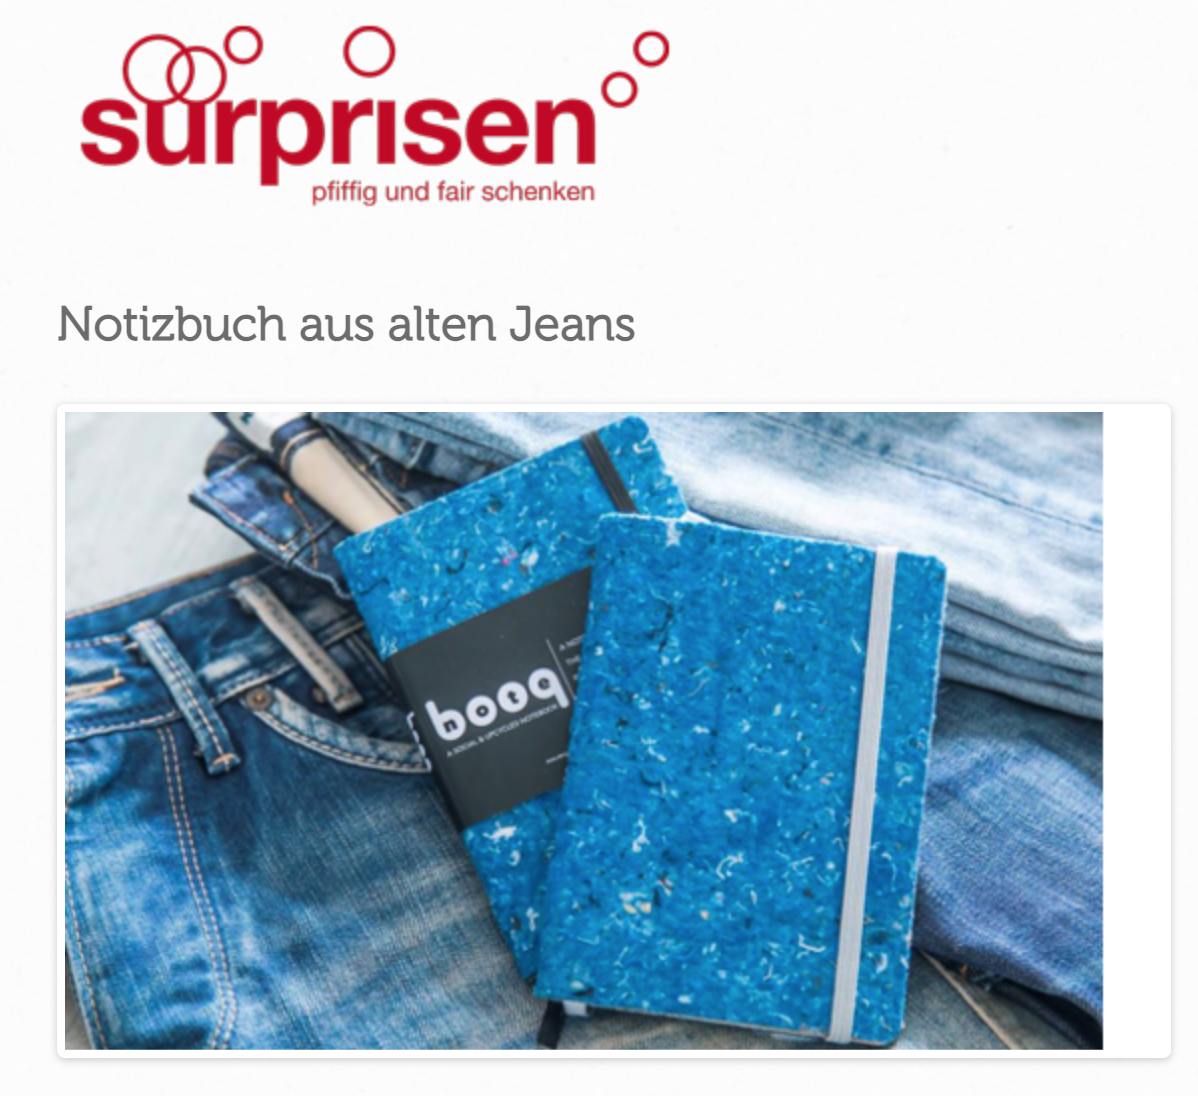 Notizbuch aus alten Jeans | surprisen